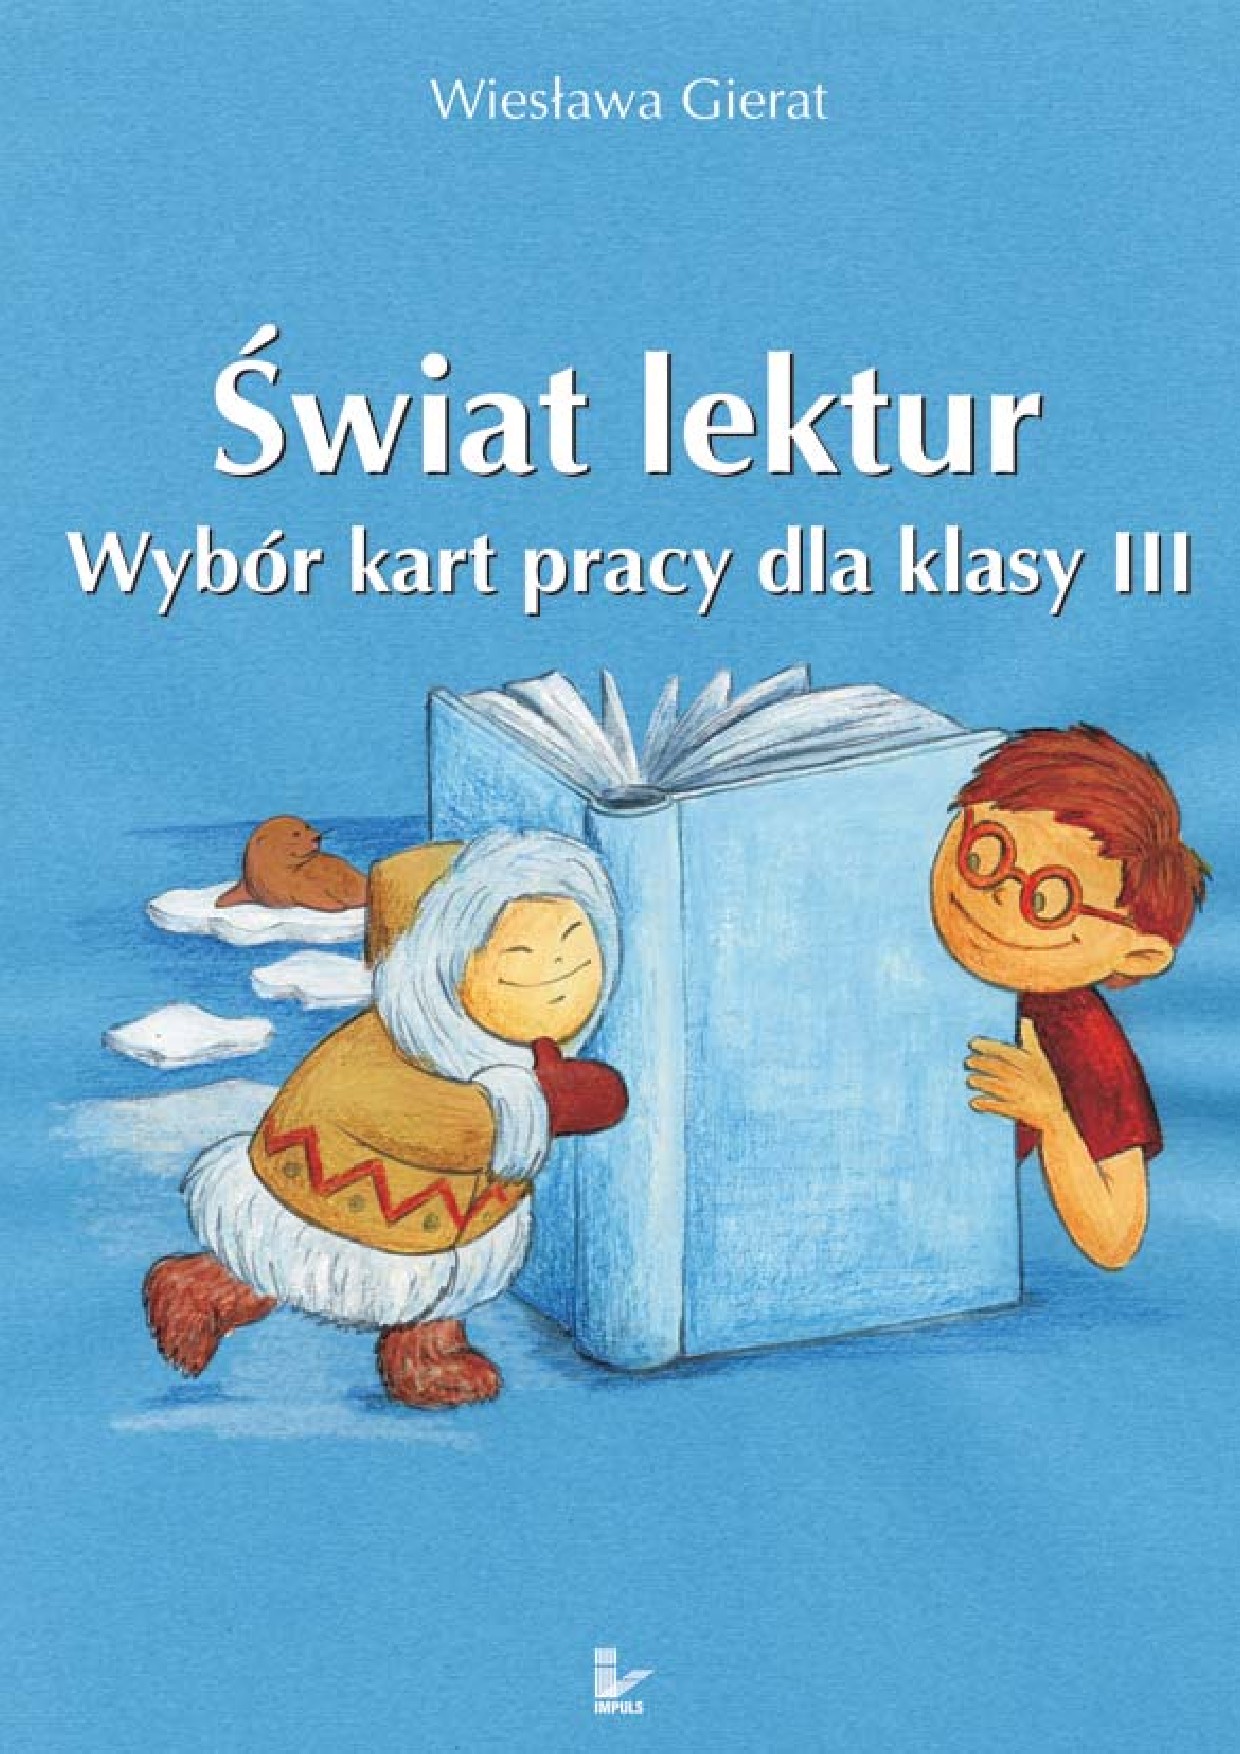 :: Świat lektur 3 - e-book ::